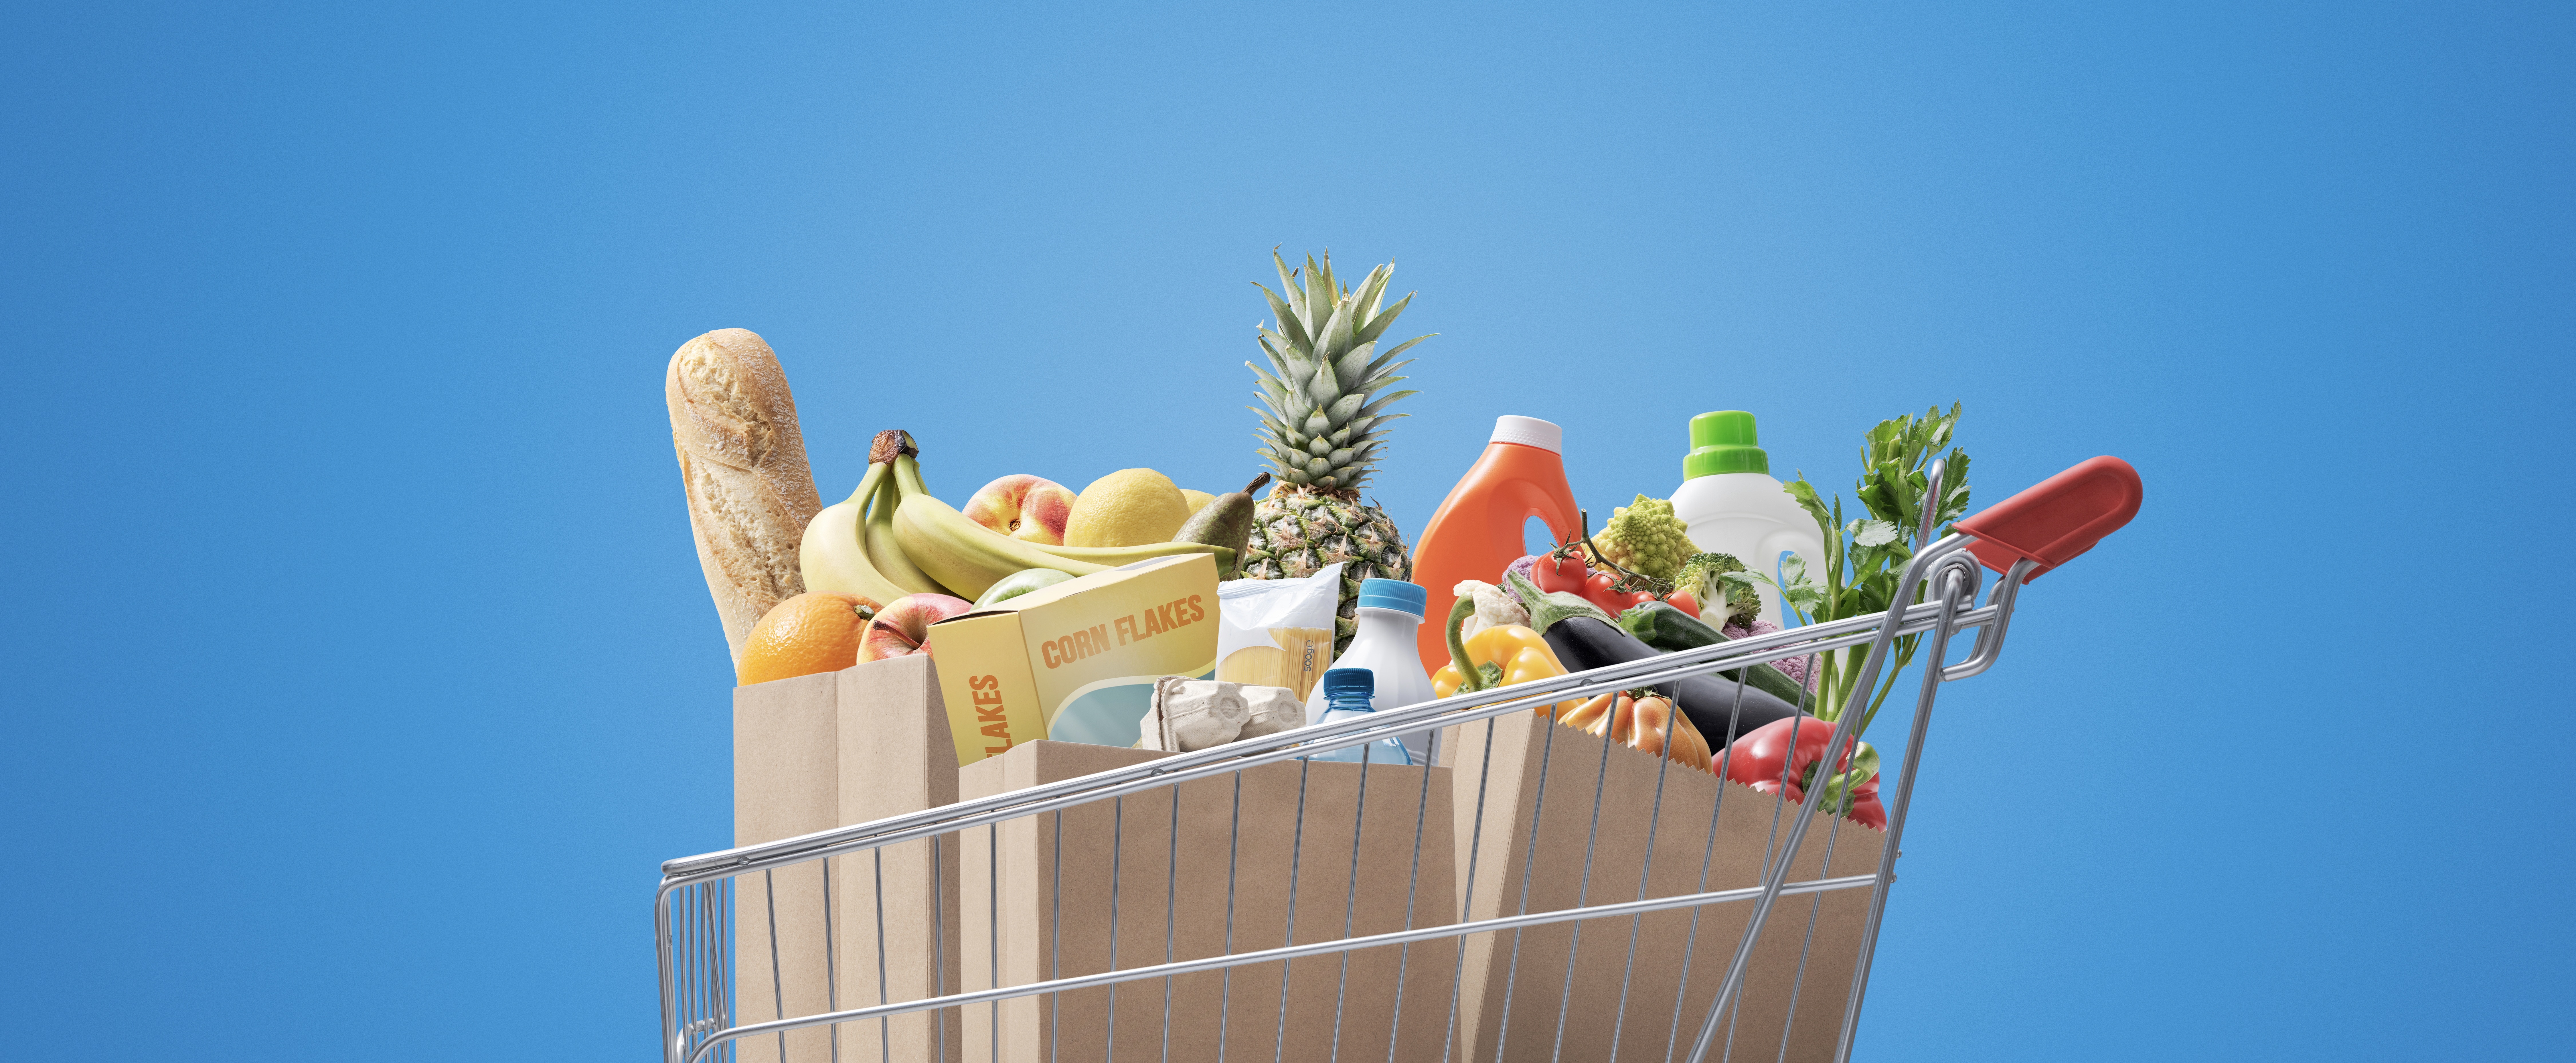 Laffe leugens: deze 7 dingen op supermarktproducten zijn mega misleidend